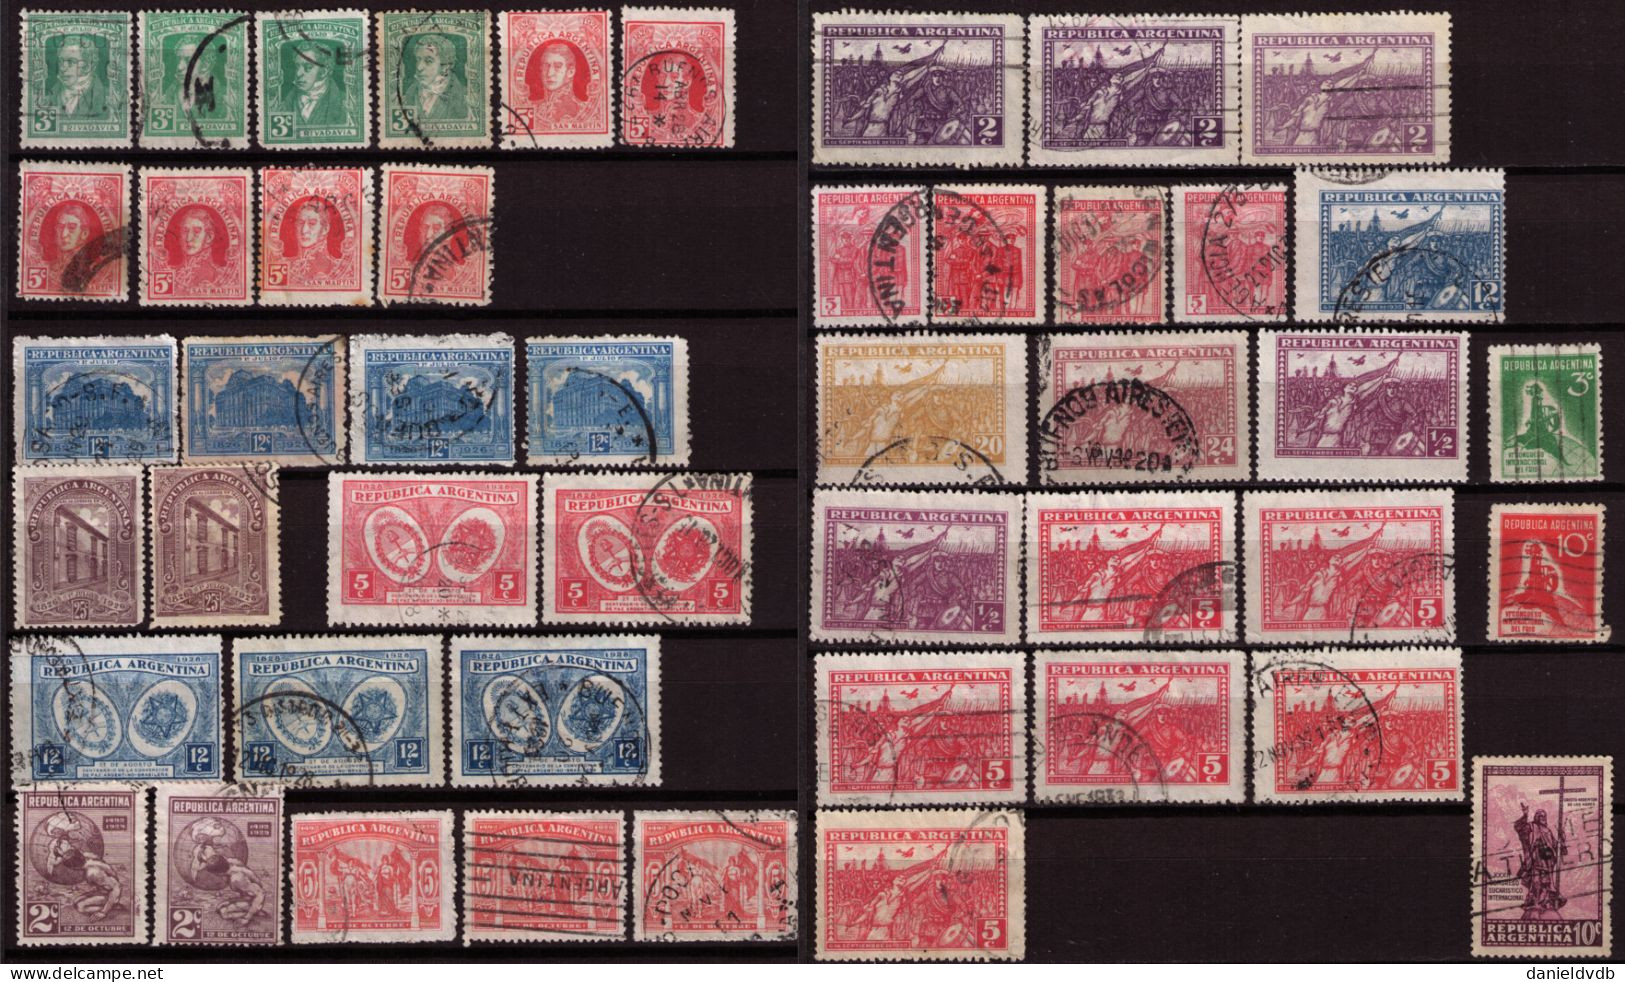 Argentine 1888-1934 Collection Oblitérée Avec Multiples Filigranes, Papiers, Dentelures, Tirages, ... - Lots & Serien